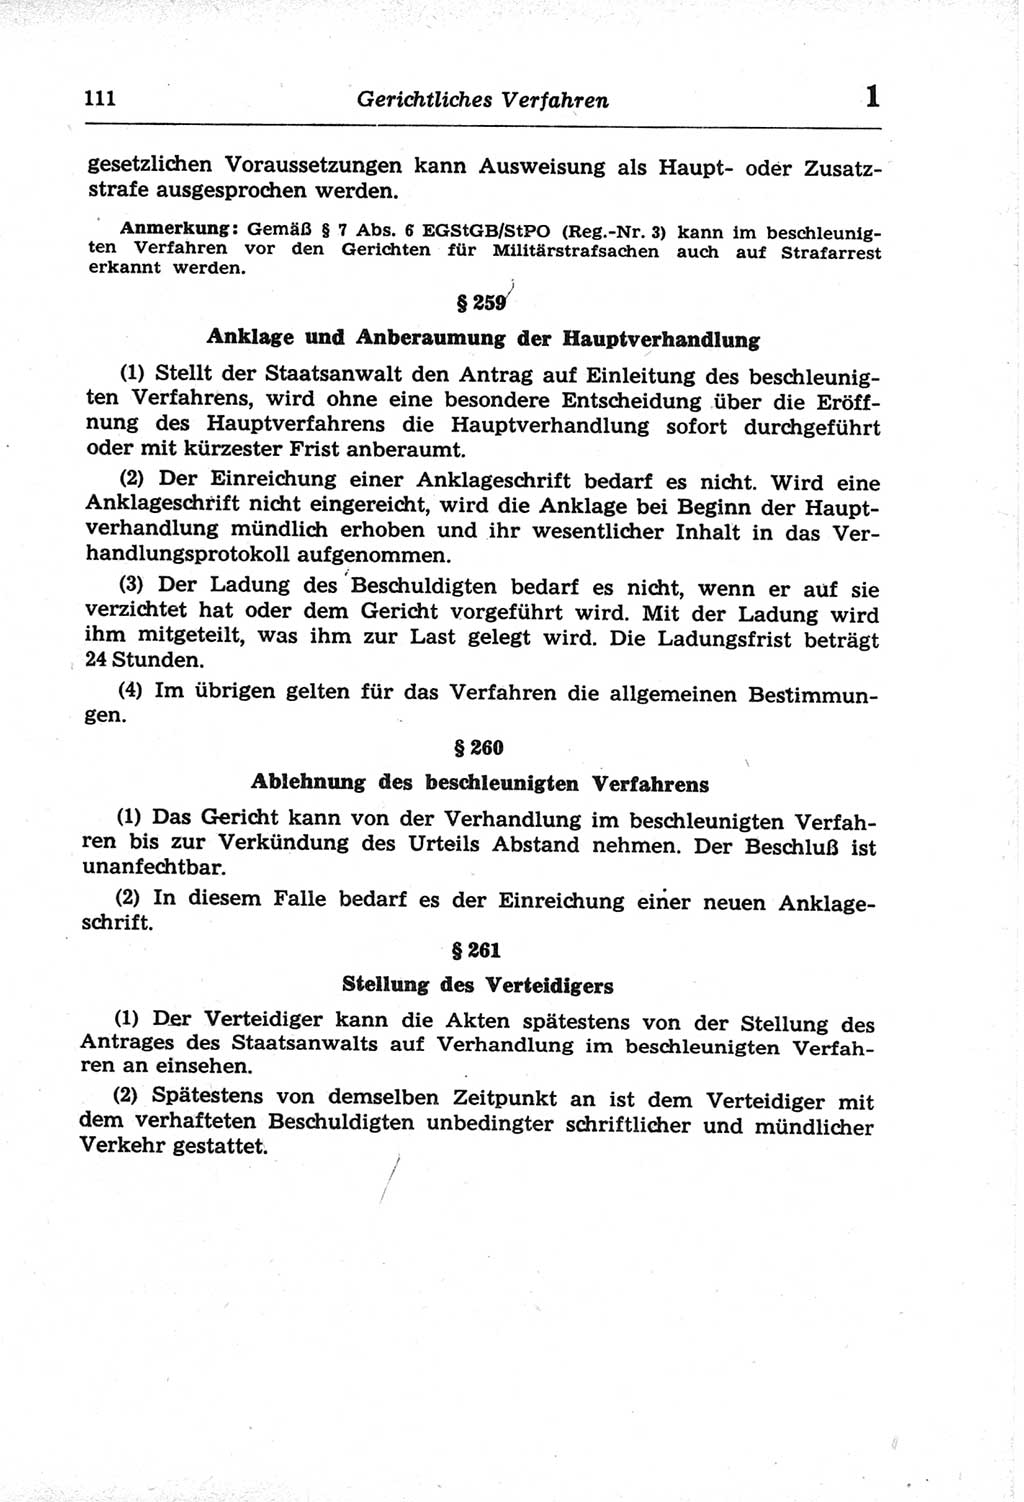 Strafprozeßordnung (StPO) der Deutschen Demokratischen Republik (DDR) und angrenzende Gesetze und Bestimmungen 1968, Seite 111 (StPO Ges. Bstgn. DDR 1968, S. 111)